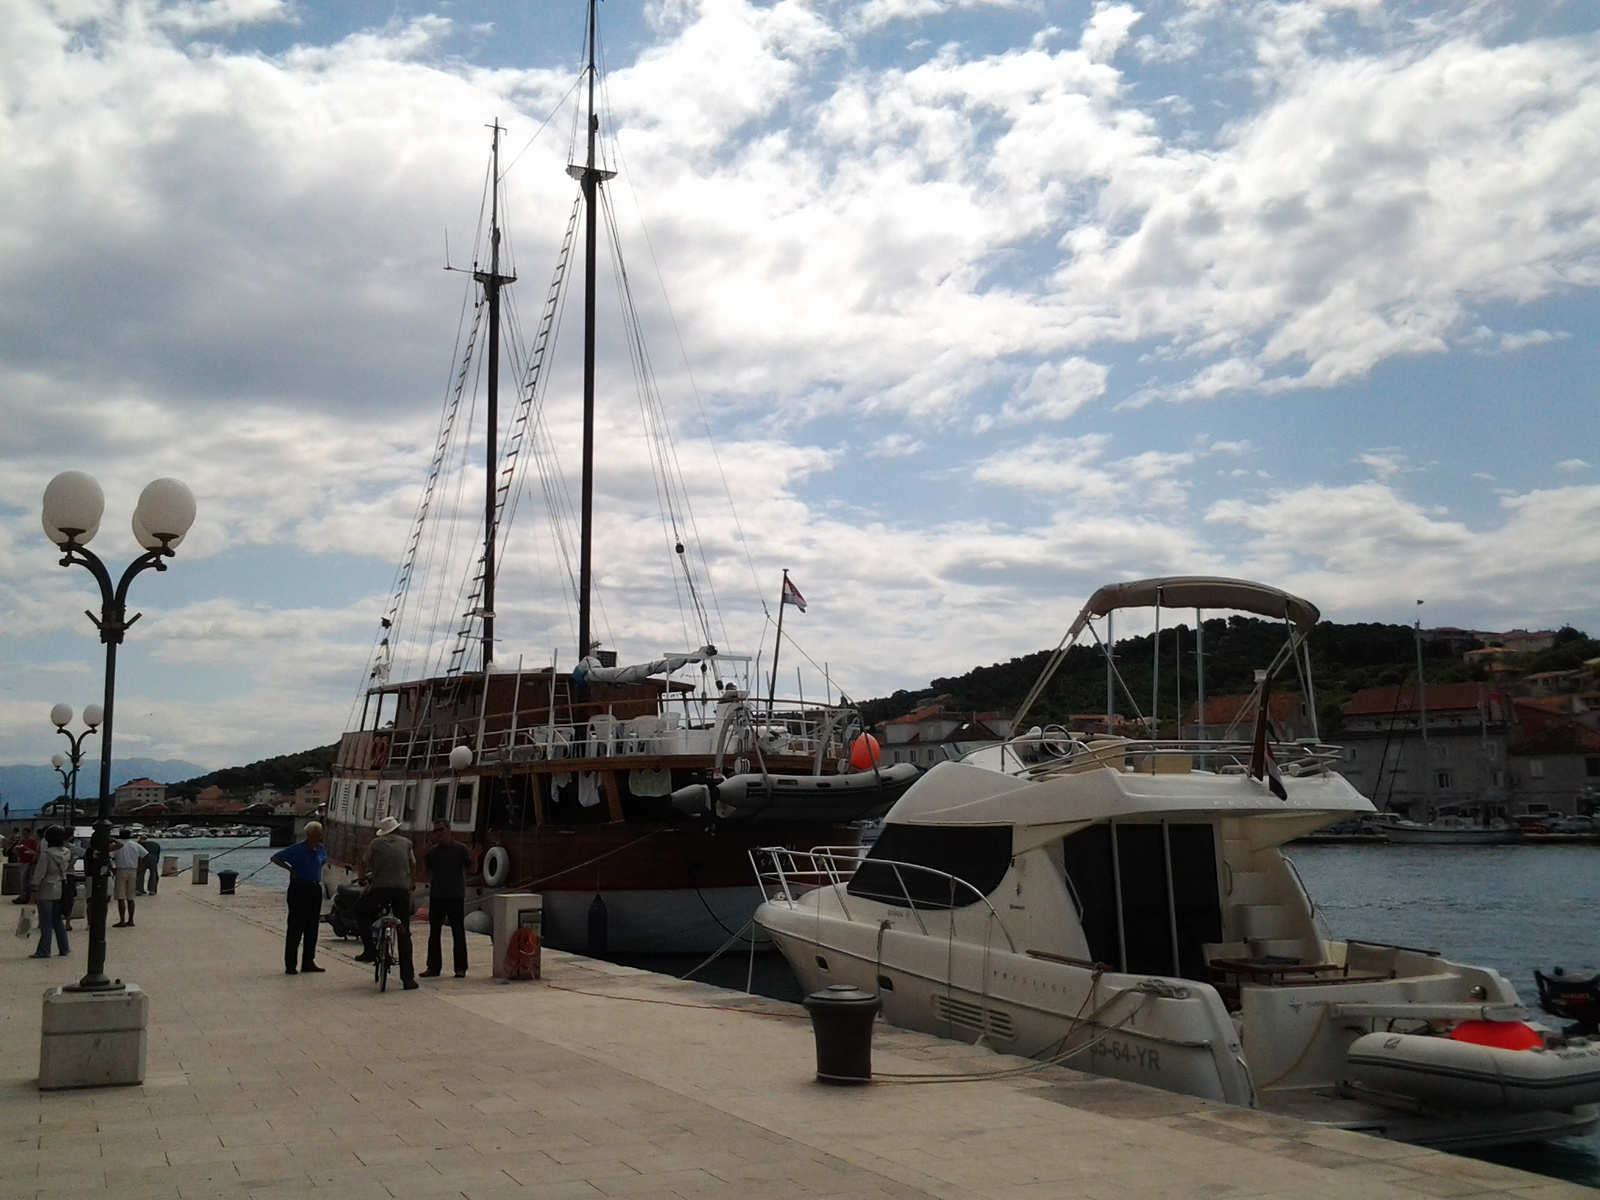 Kikötő, Trogir